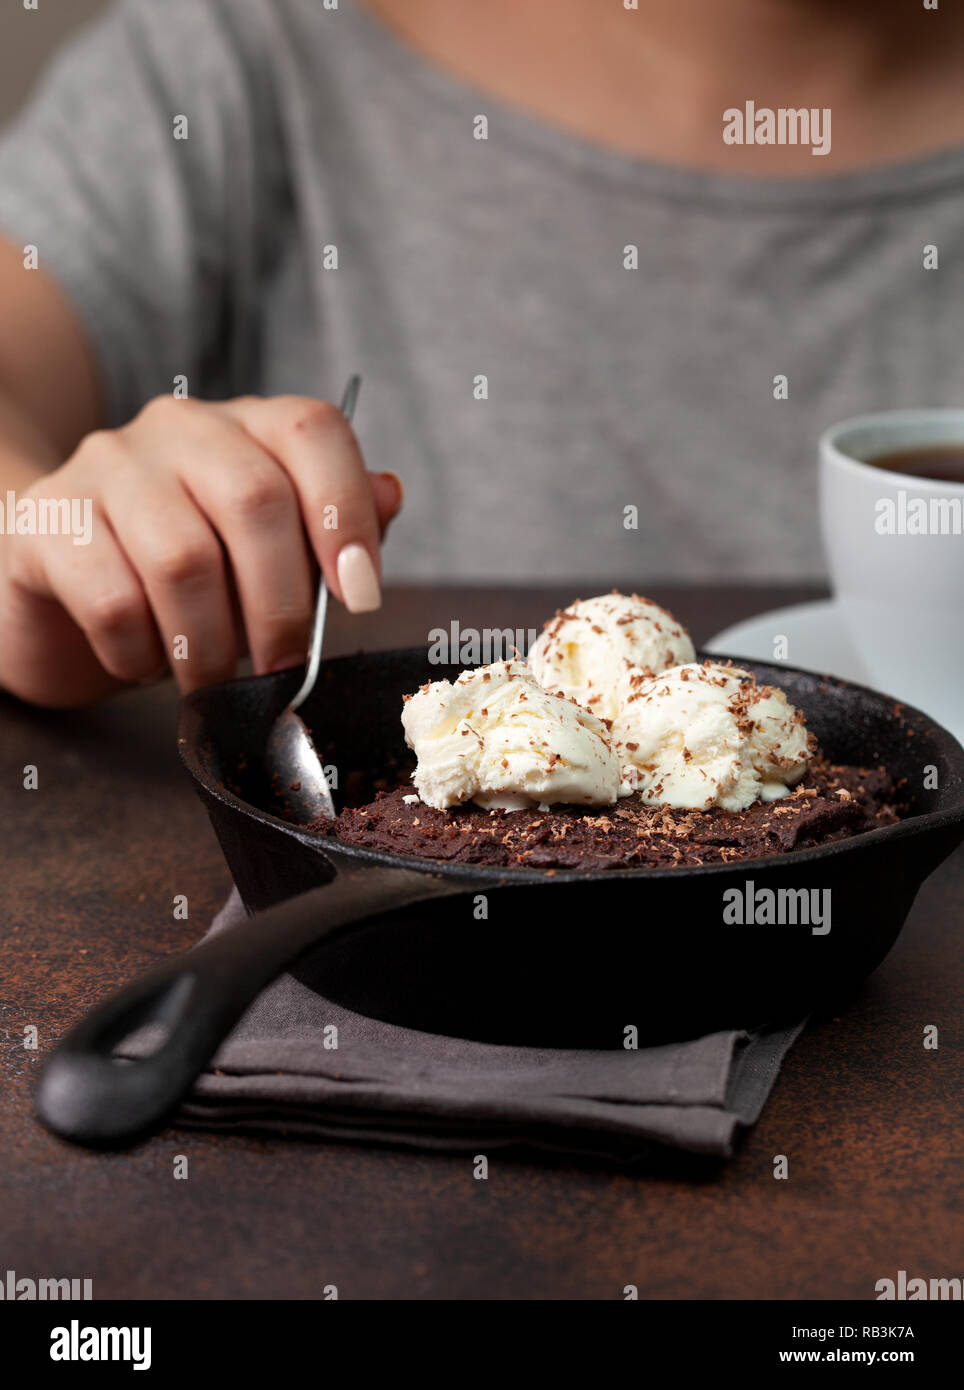 Brownie avec une glace à la vanille dans une casserole, une tasse de café sur un fond brun Banque D'Images